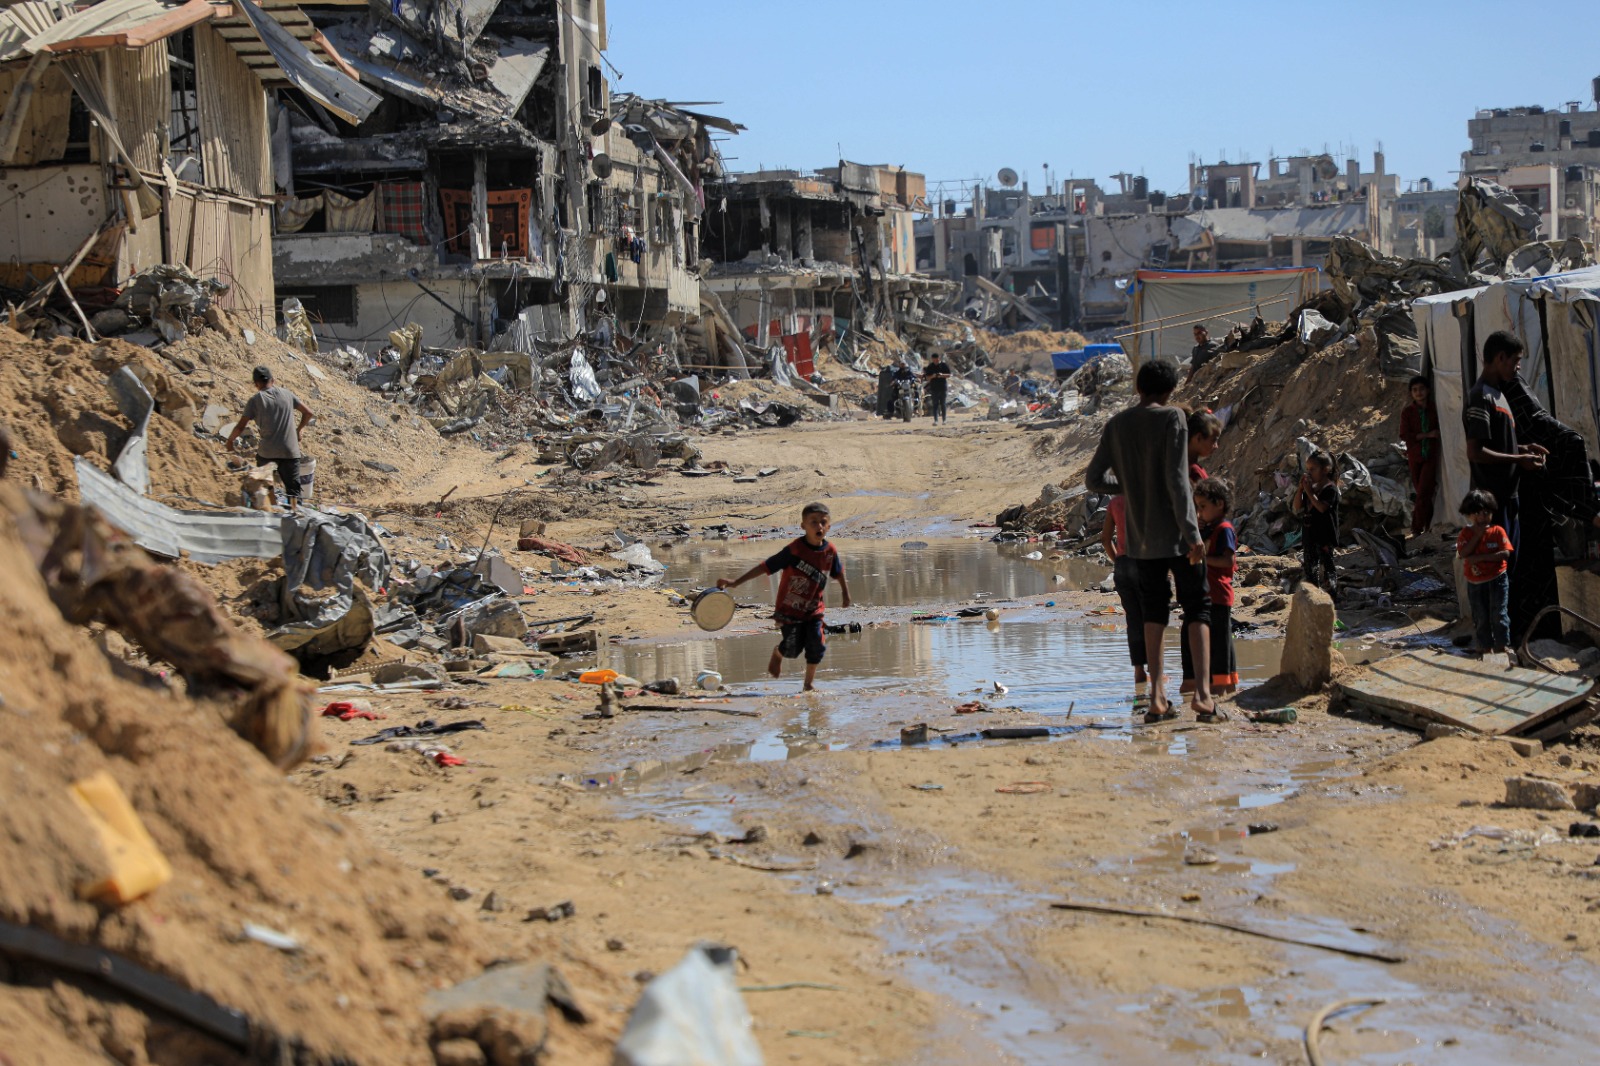 رغم التدمير الهائل يعود النازحون لمنازلهم ومناطقهم ويعيدون لها الحياة من جديد-أحلام حماد-الترا فلسطين (1)